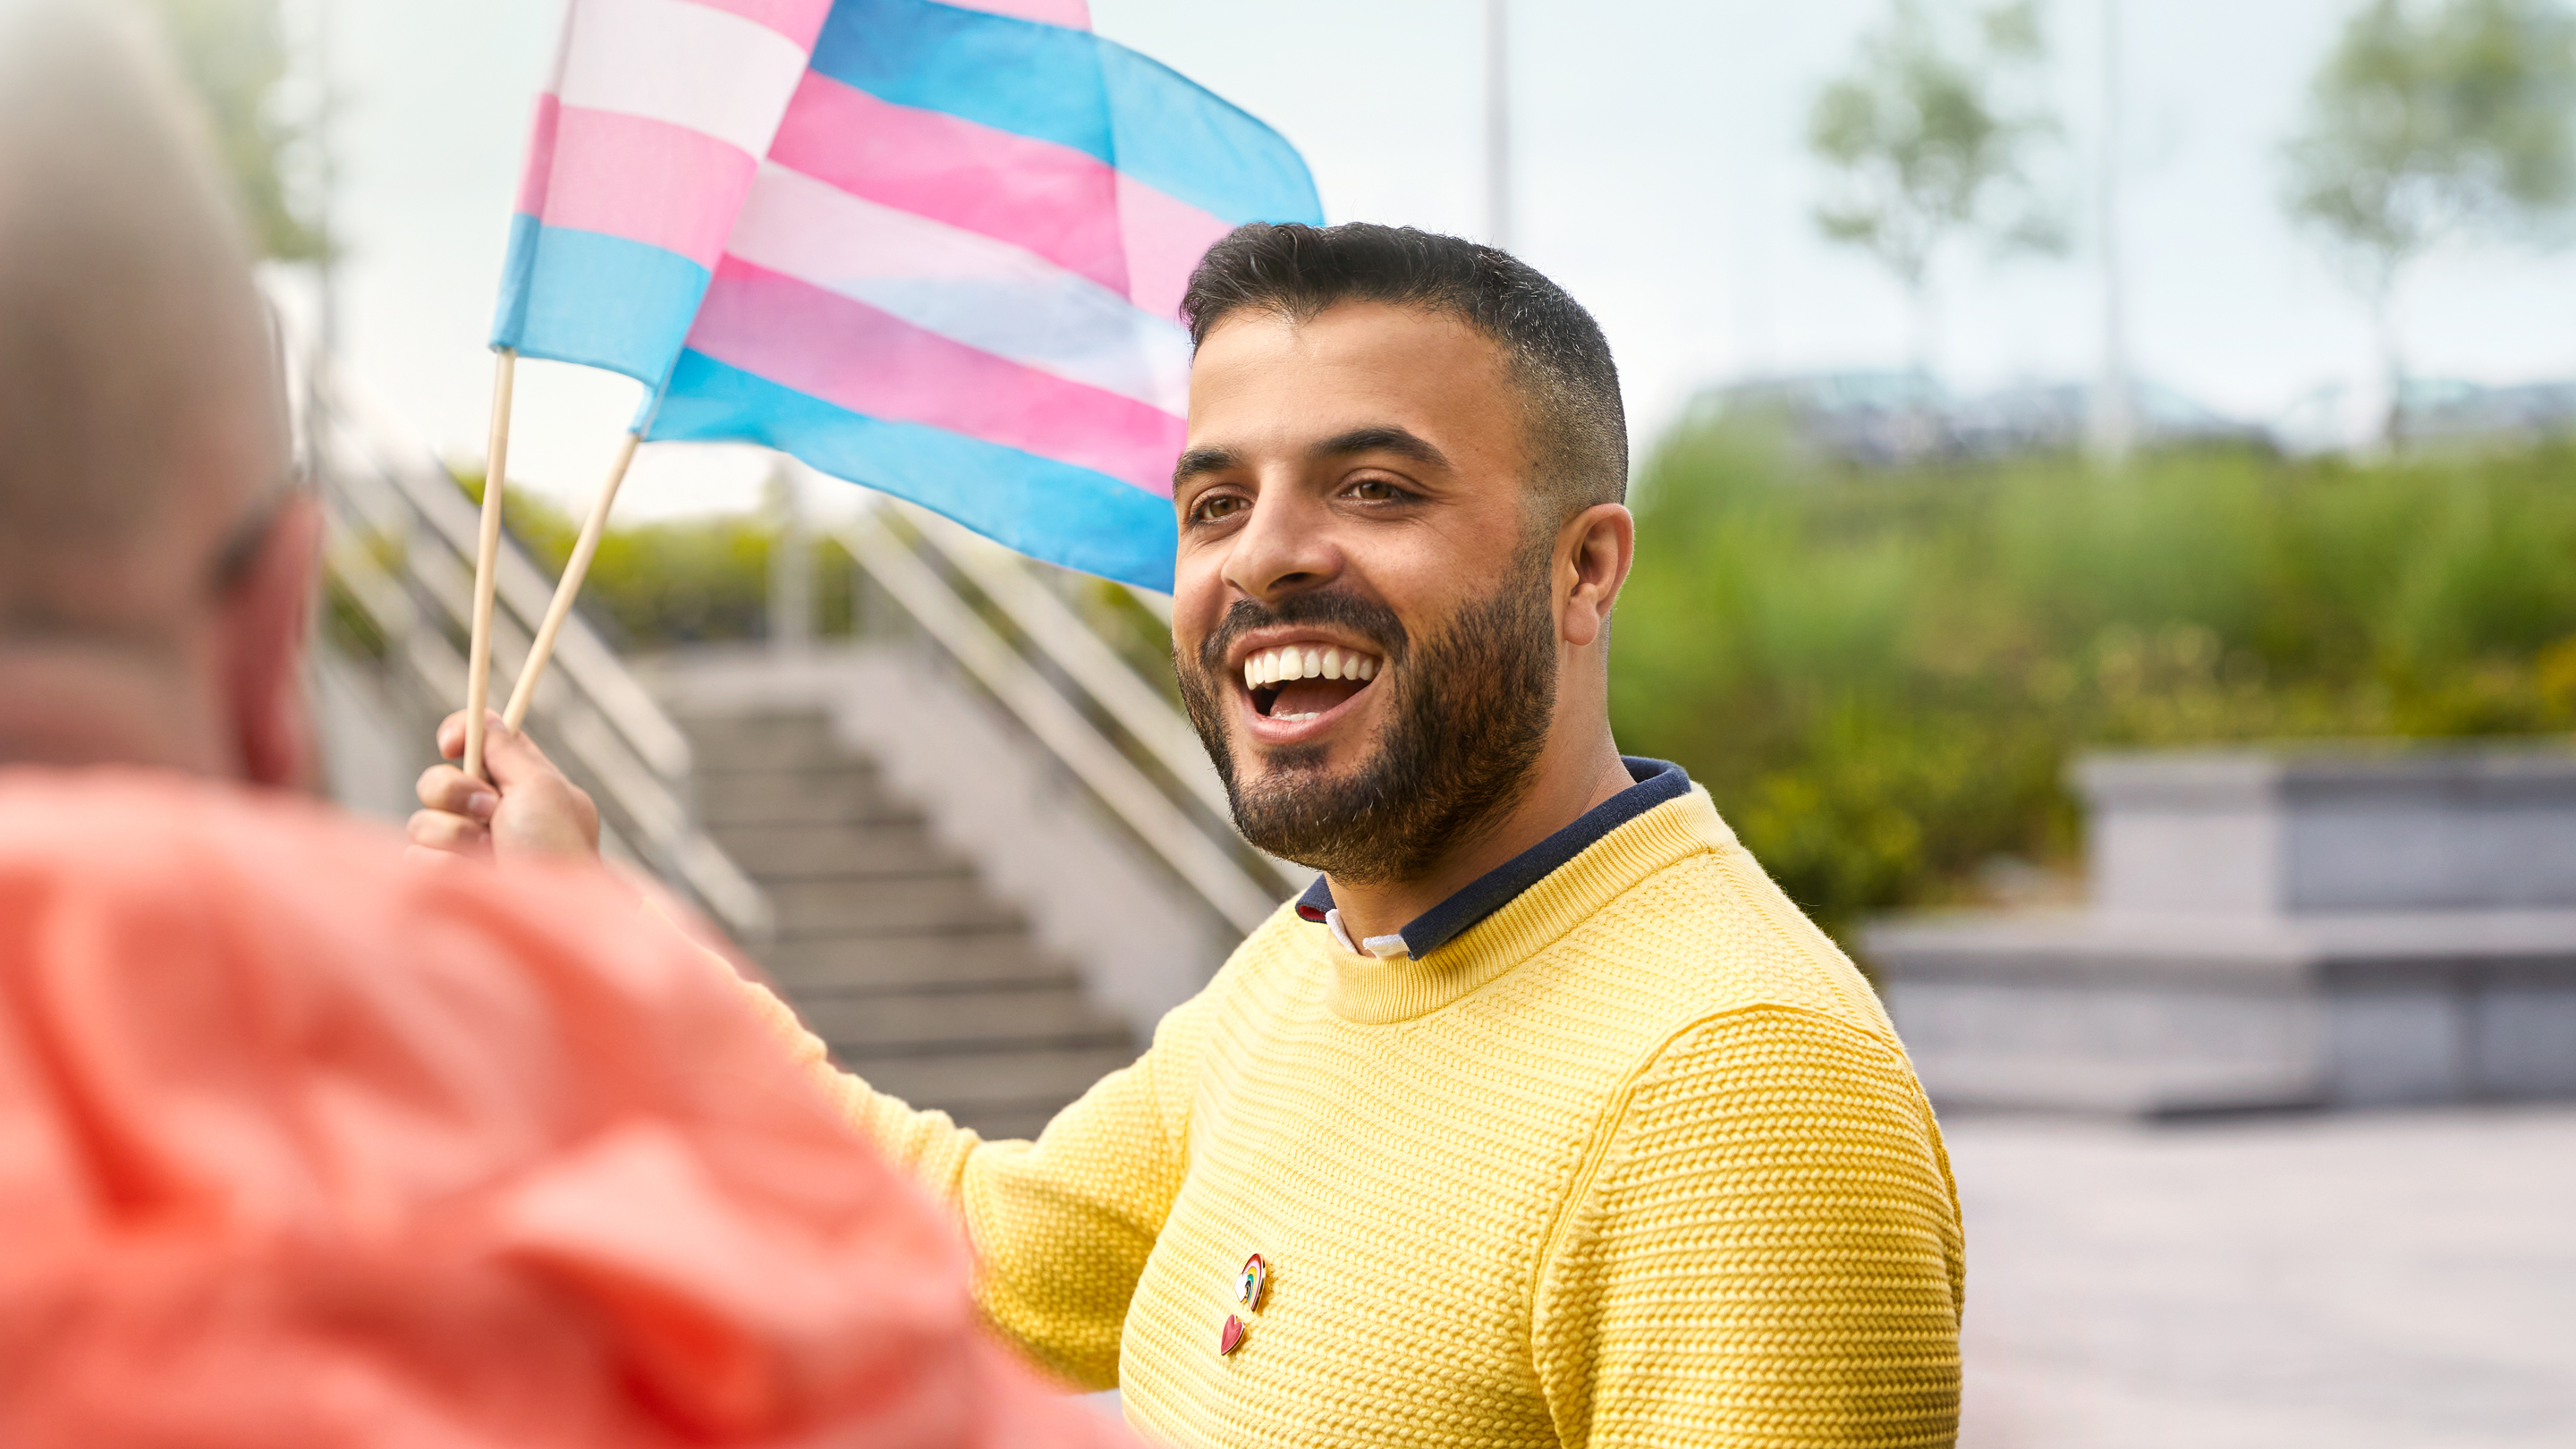 Un dipendente di Cork che sventola una bandiera della comunità transgender.